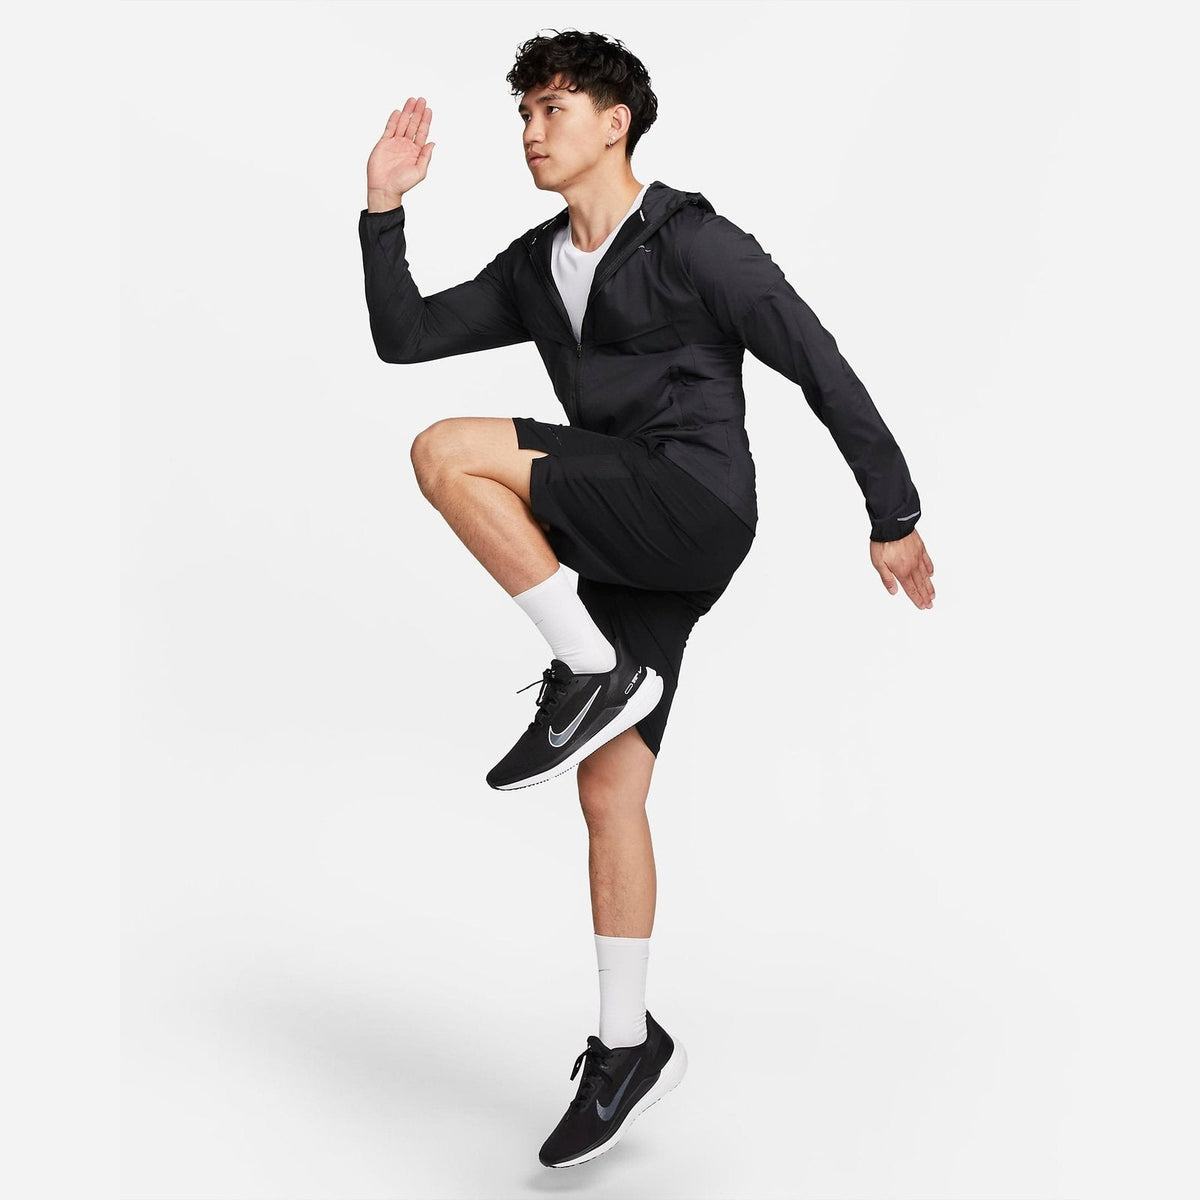 Nike Windrunner Repel Jacket Mens APPAREL - Mens Jackets 